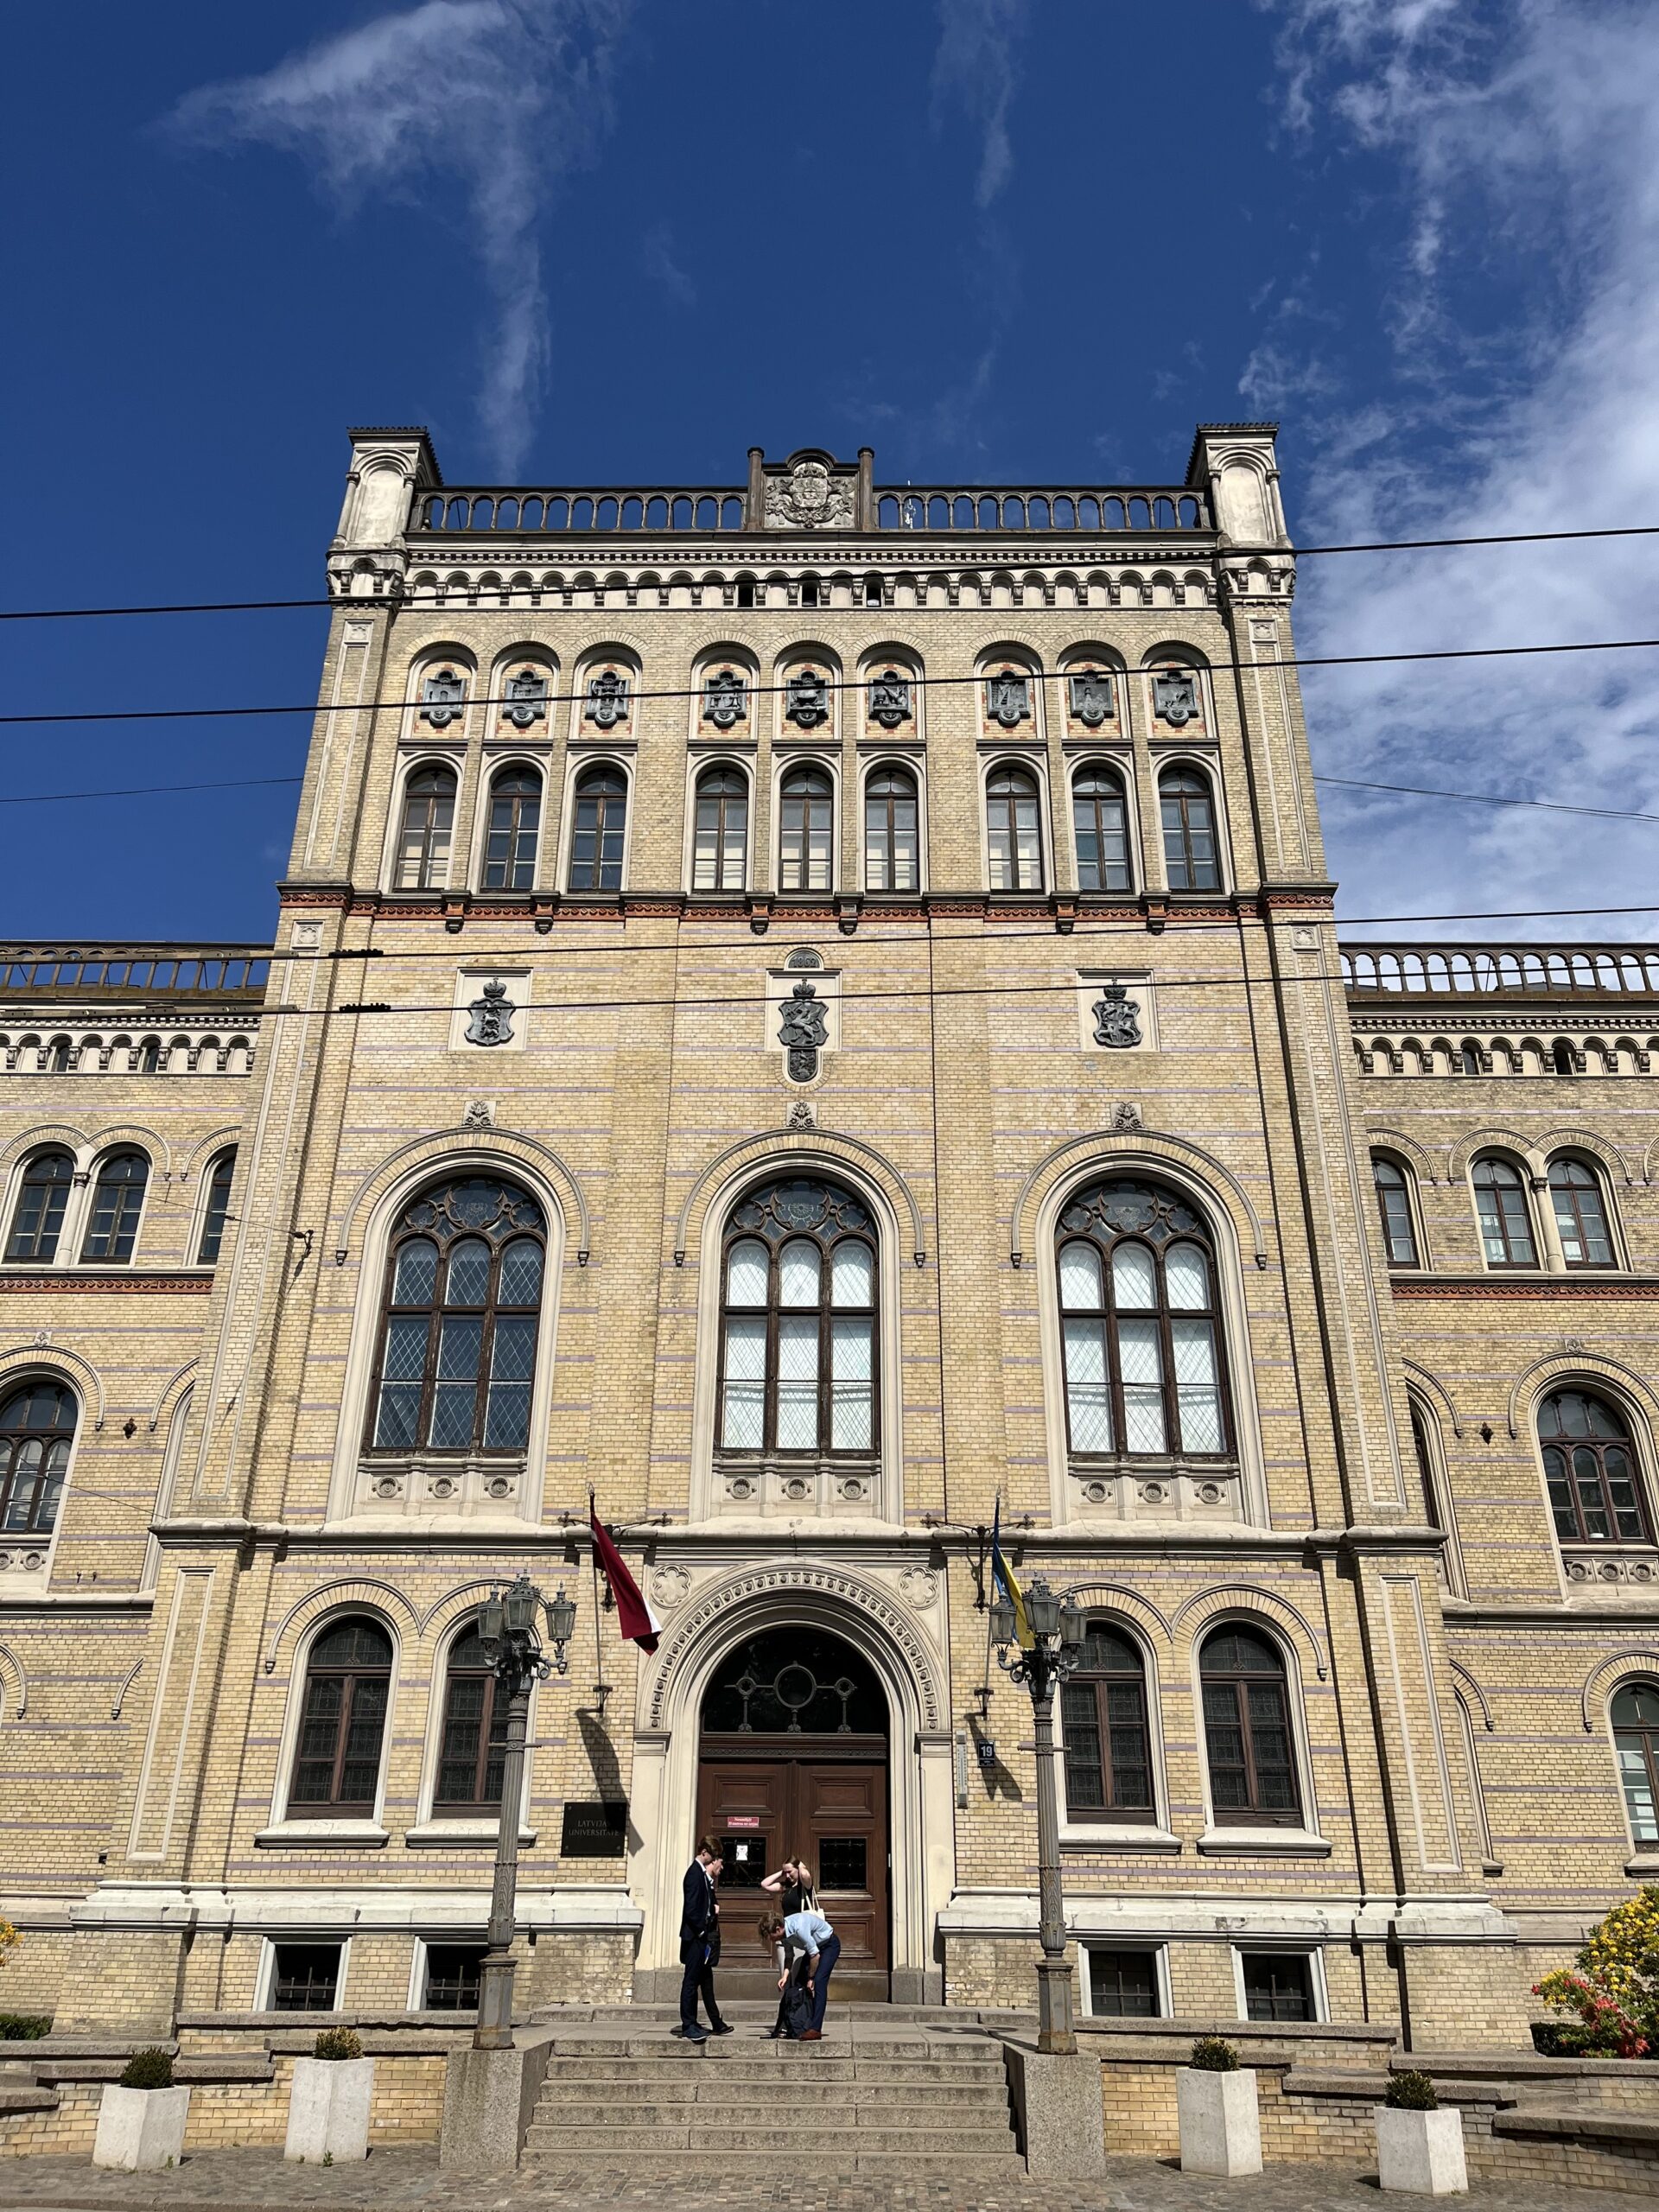 View of the University of Latvia main building in Riga, Latvia.